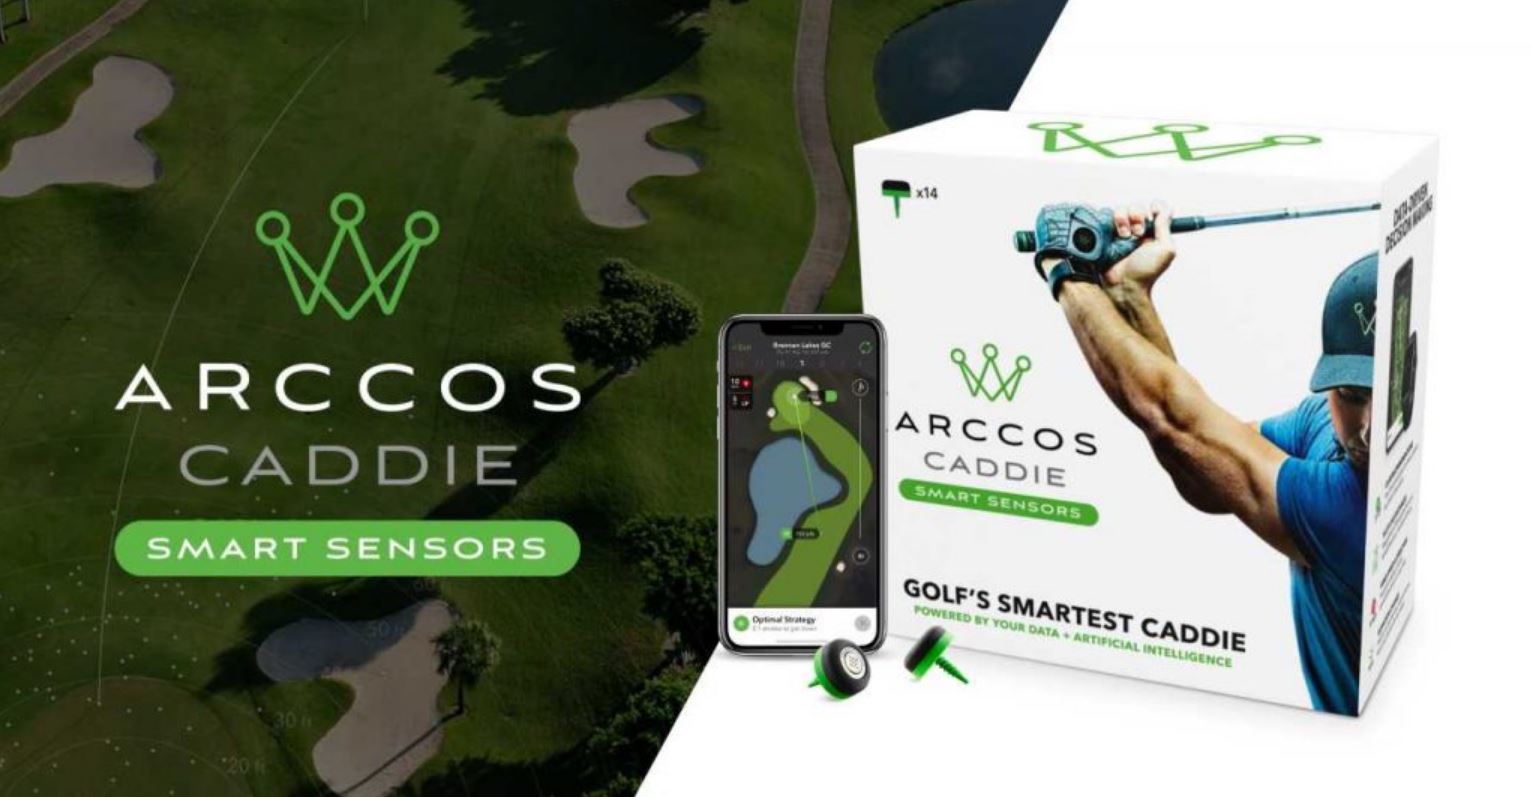 arccos golf tracker review